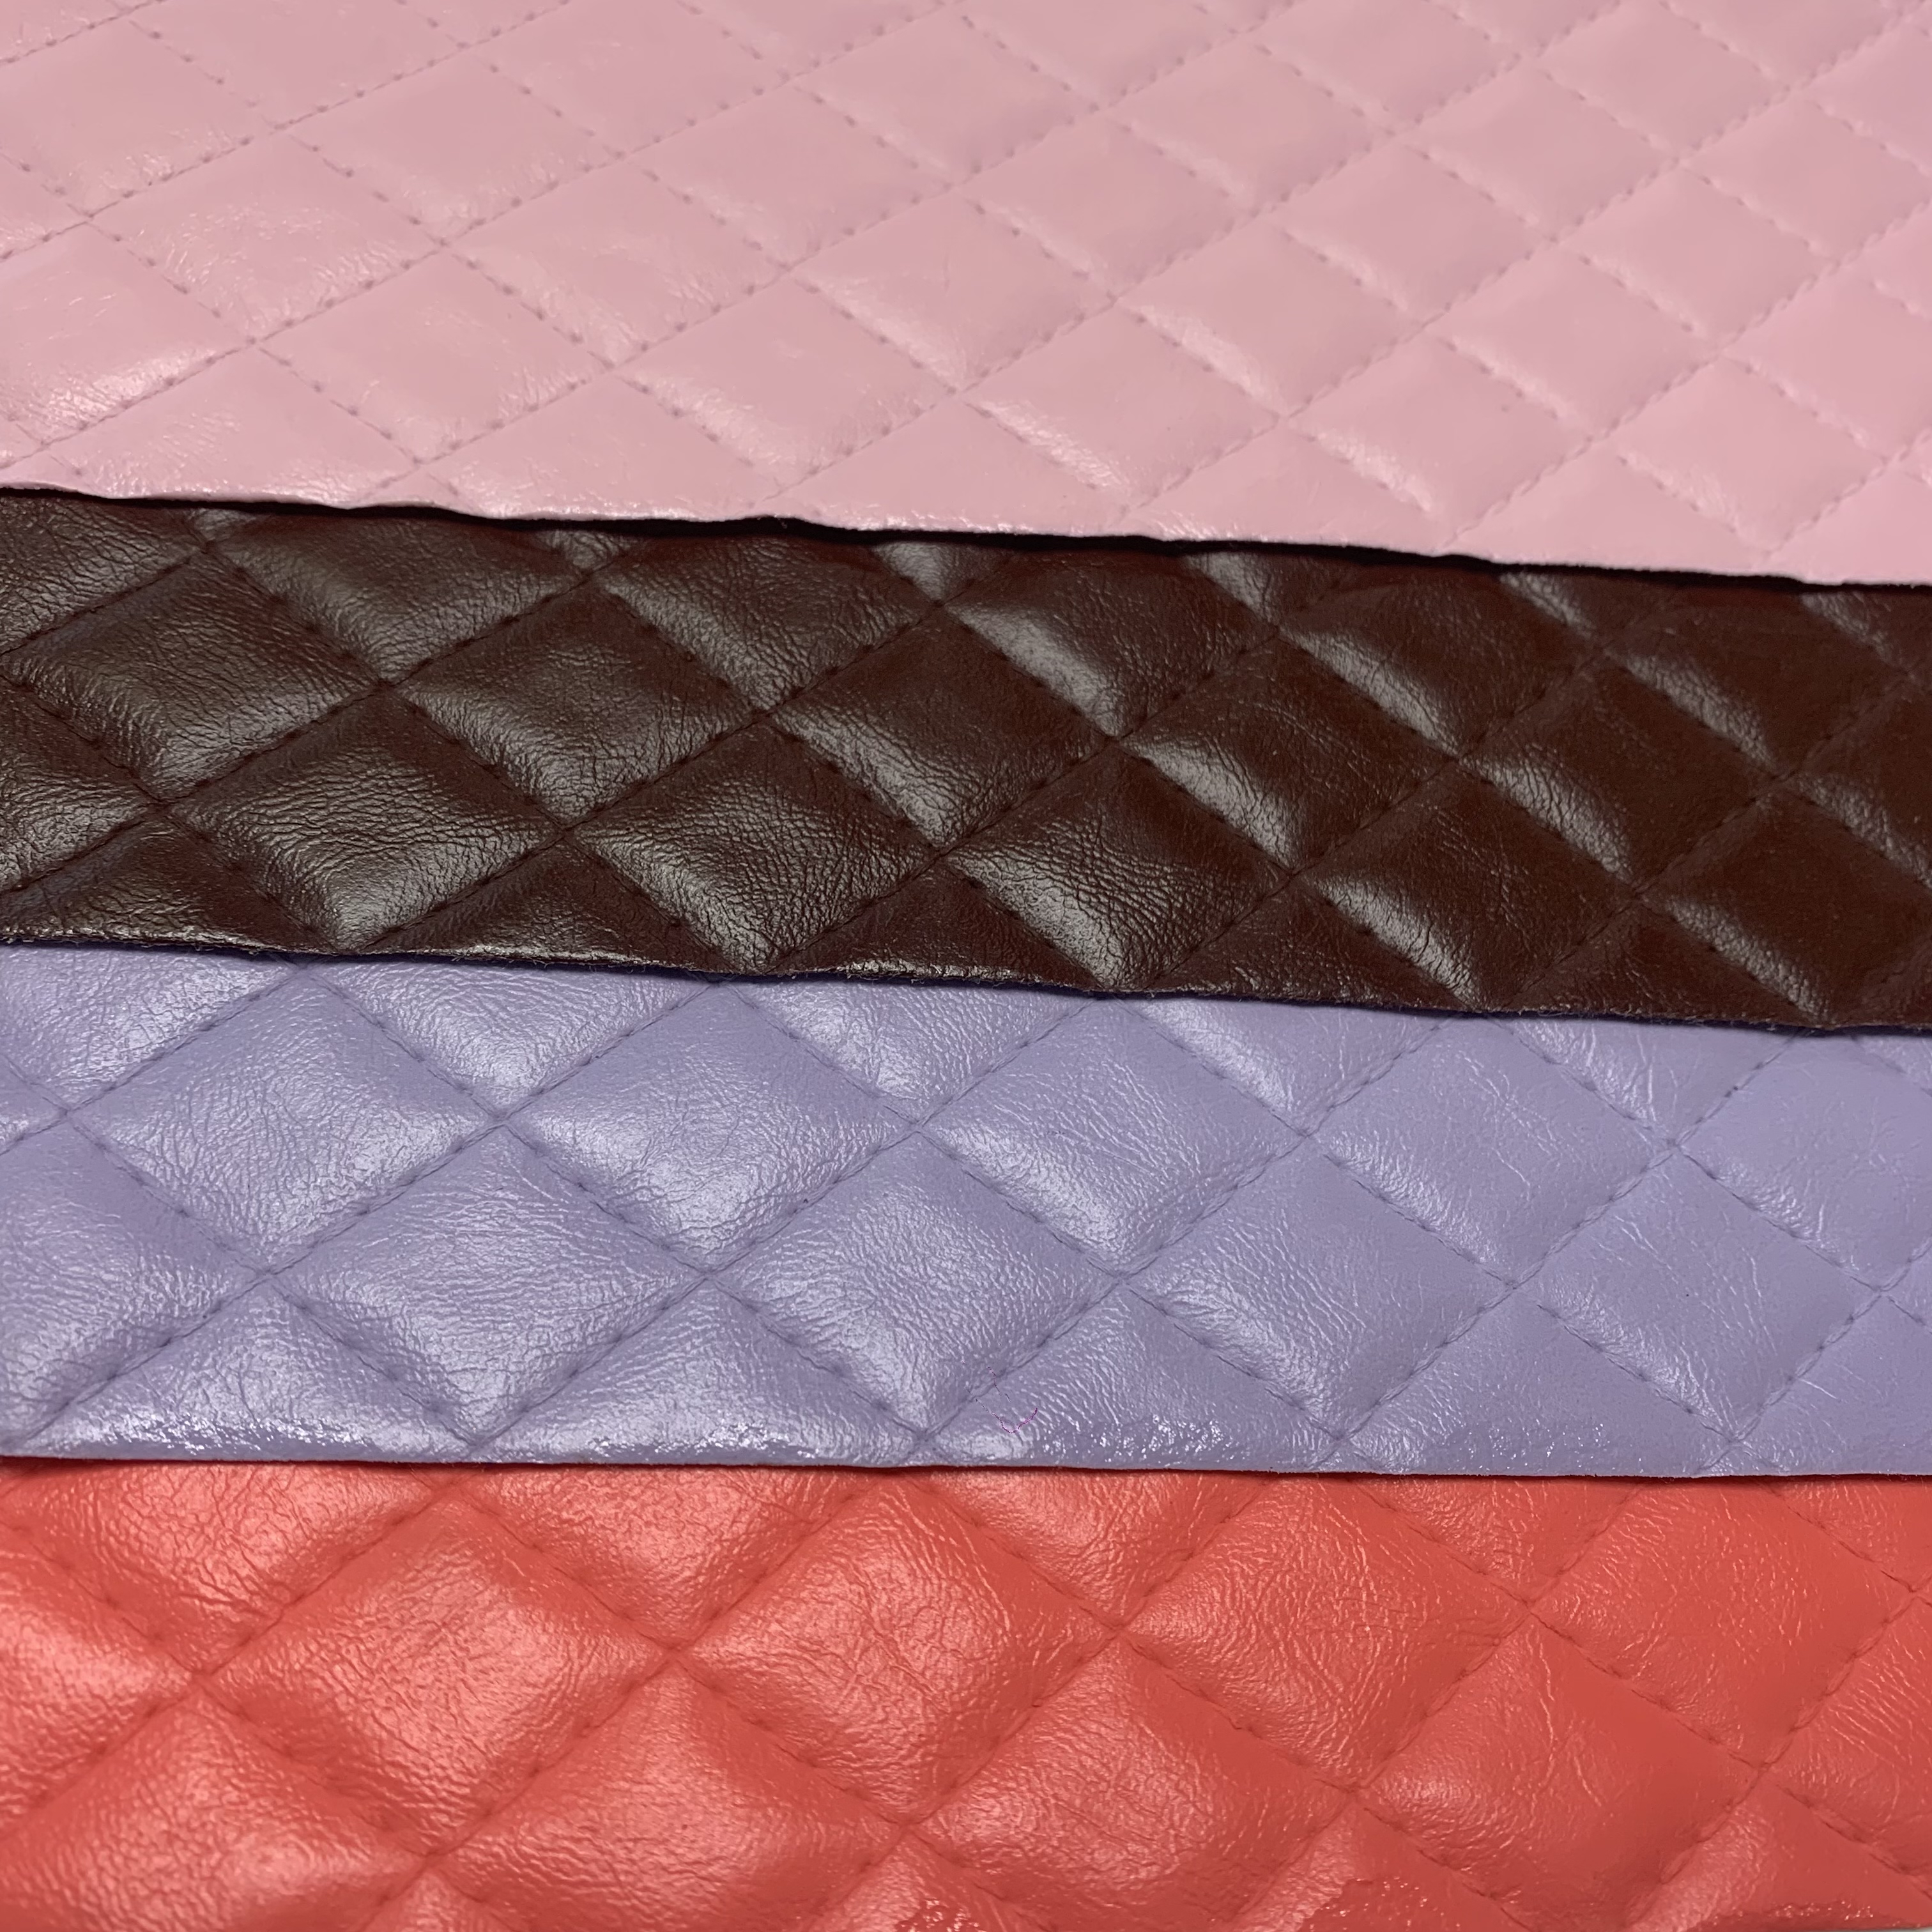 Faux Leather Professional Manufacturer ea letlalo la PVC le hanyetsanang le mollo bakeng sa mekotla ea matsoho